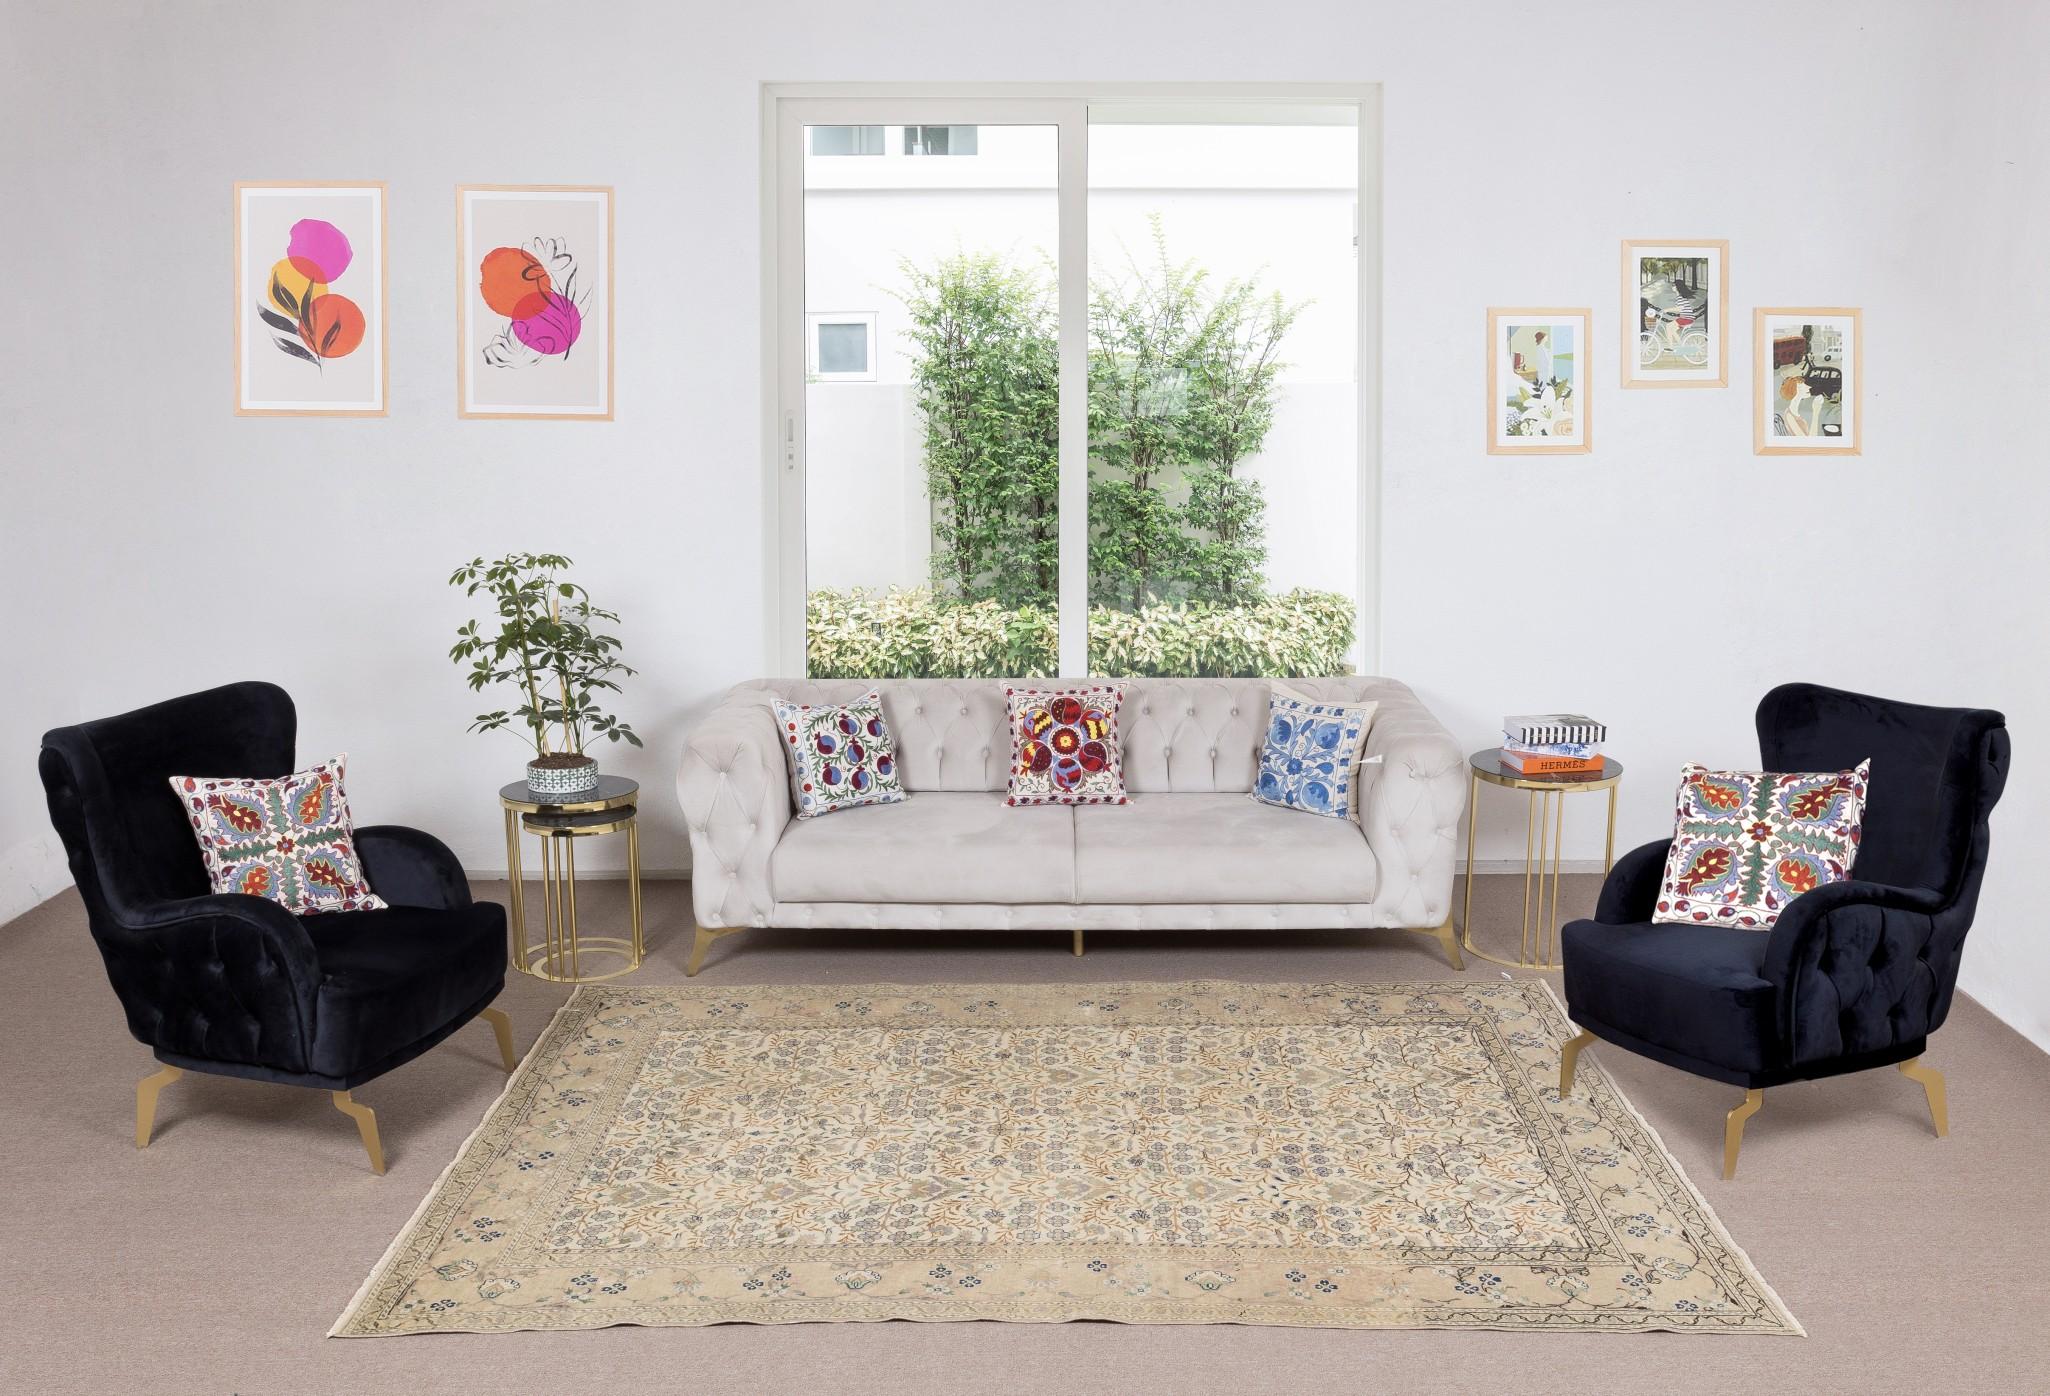 Unsere sonnenverblassten Teppiche sind allesamt einzigartige, handgeknüpfte, 50-70 Jahre alte Vintage-Stücke. Jeder von ihnen zeichnet sich durch eine einzigartige, handgefertigte Ästhetik aus, die aus der jahrhundertealten türkischen